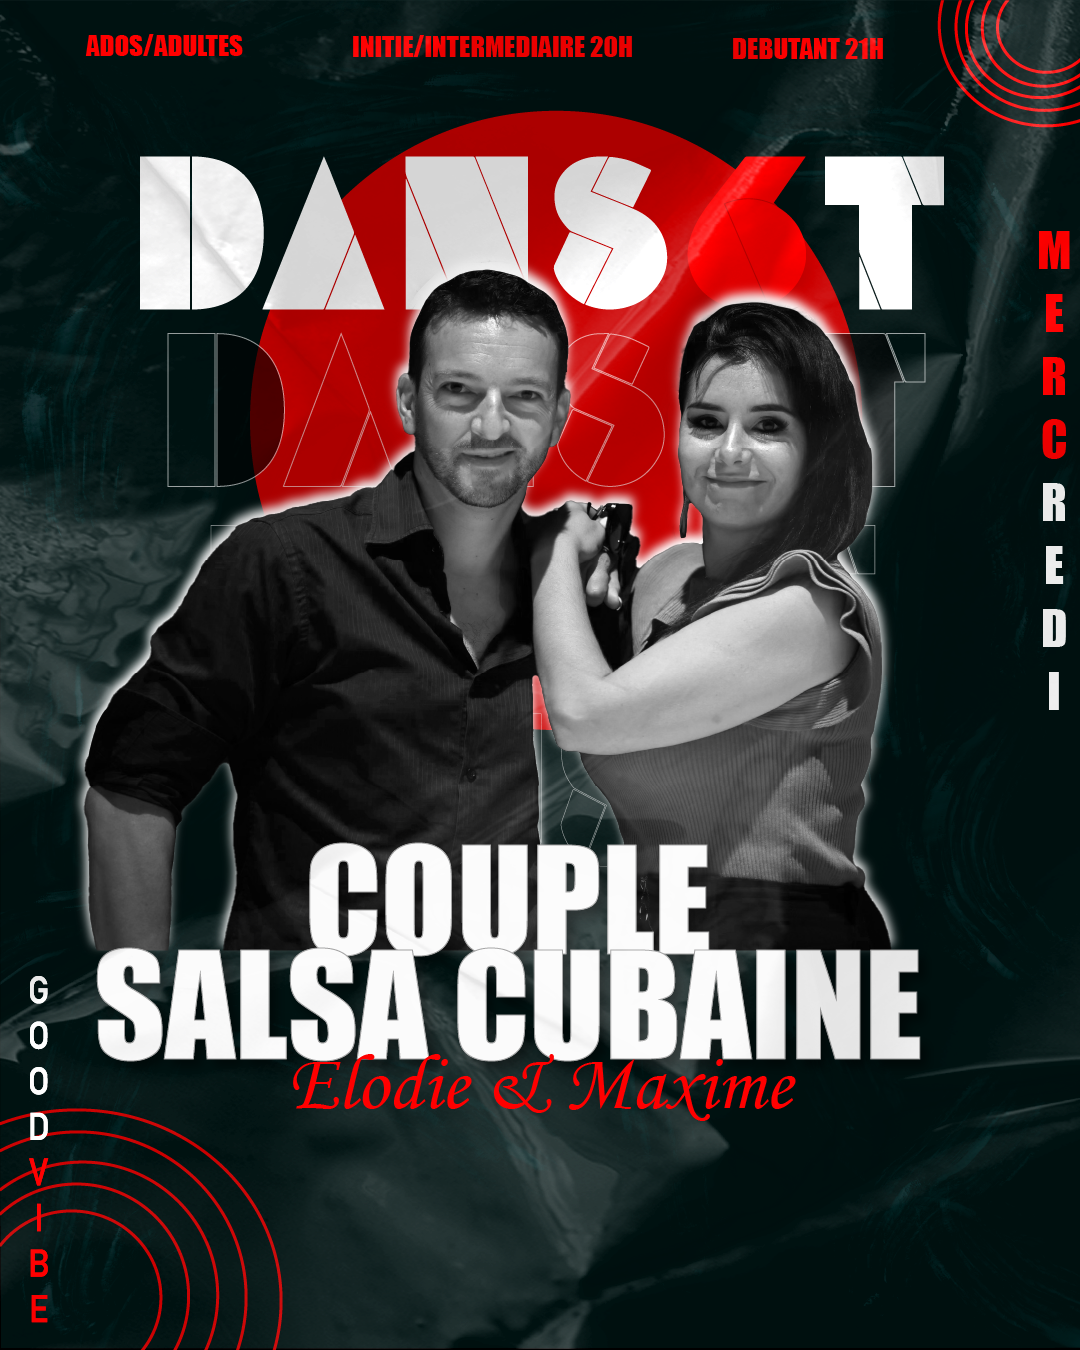 Visuel pour le cours de salsa cubaine avec Elodie et Maxime, premier cours d'essai gratuit